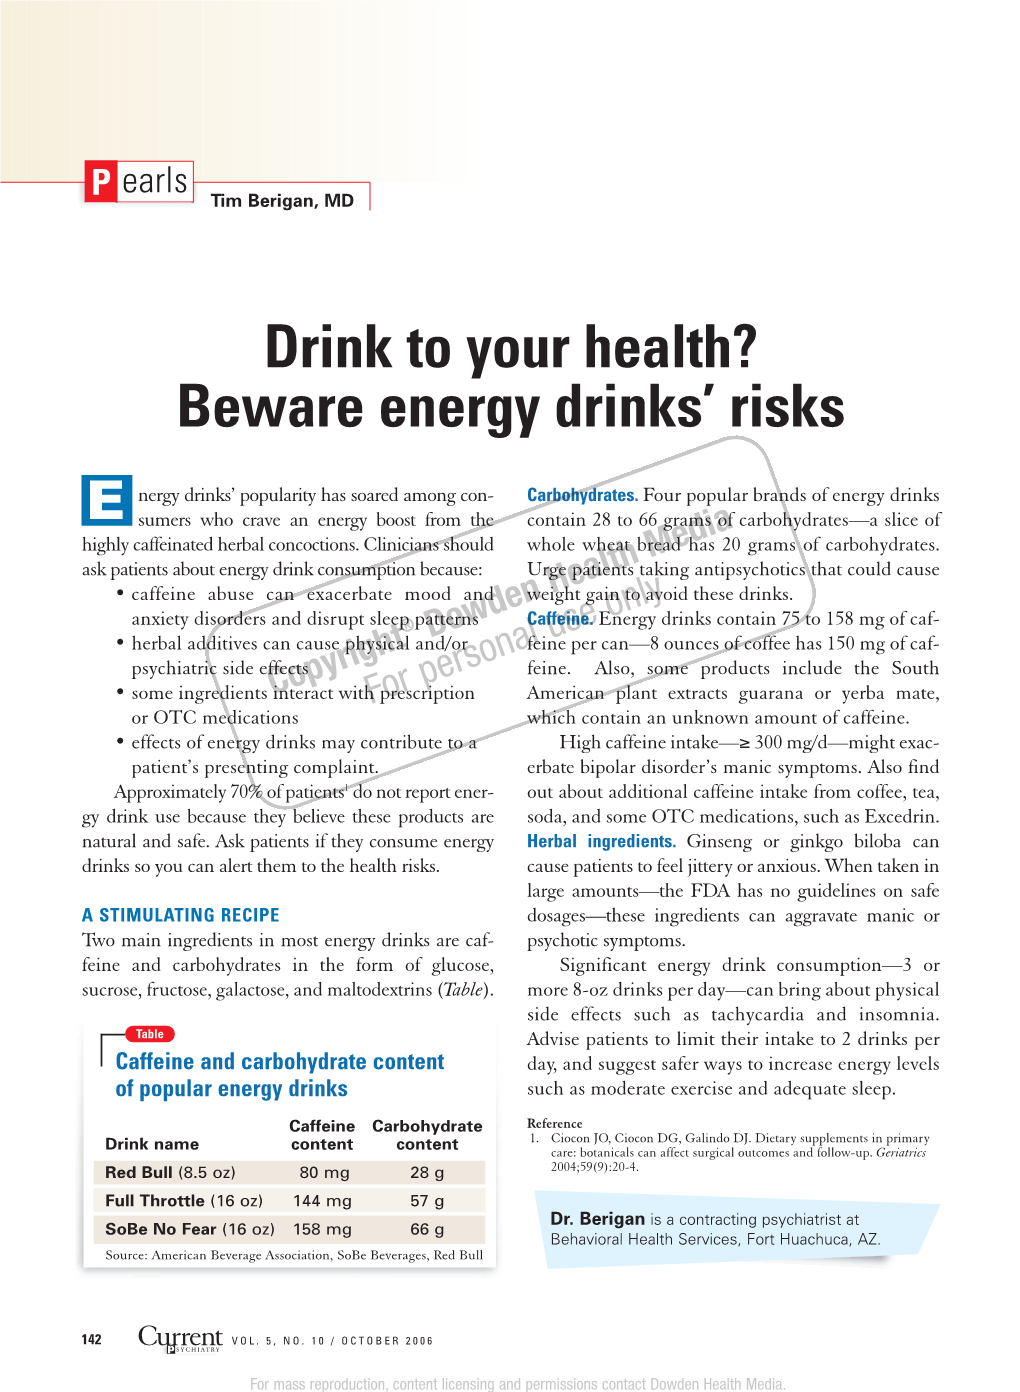 Beware Energy Drinks' Risks